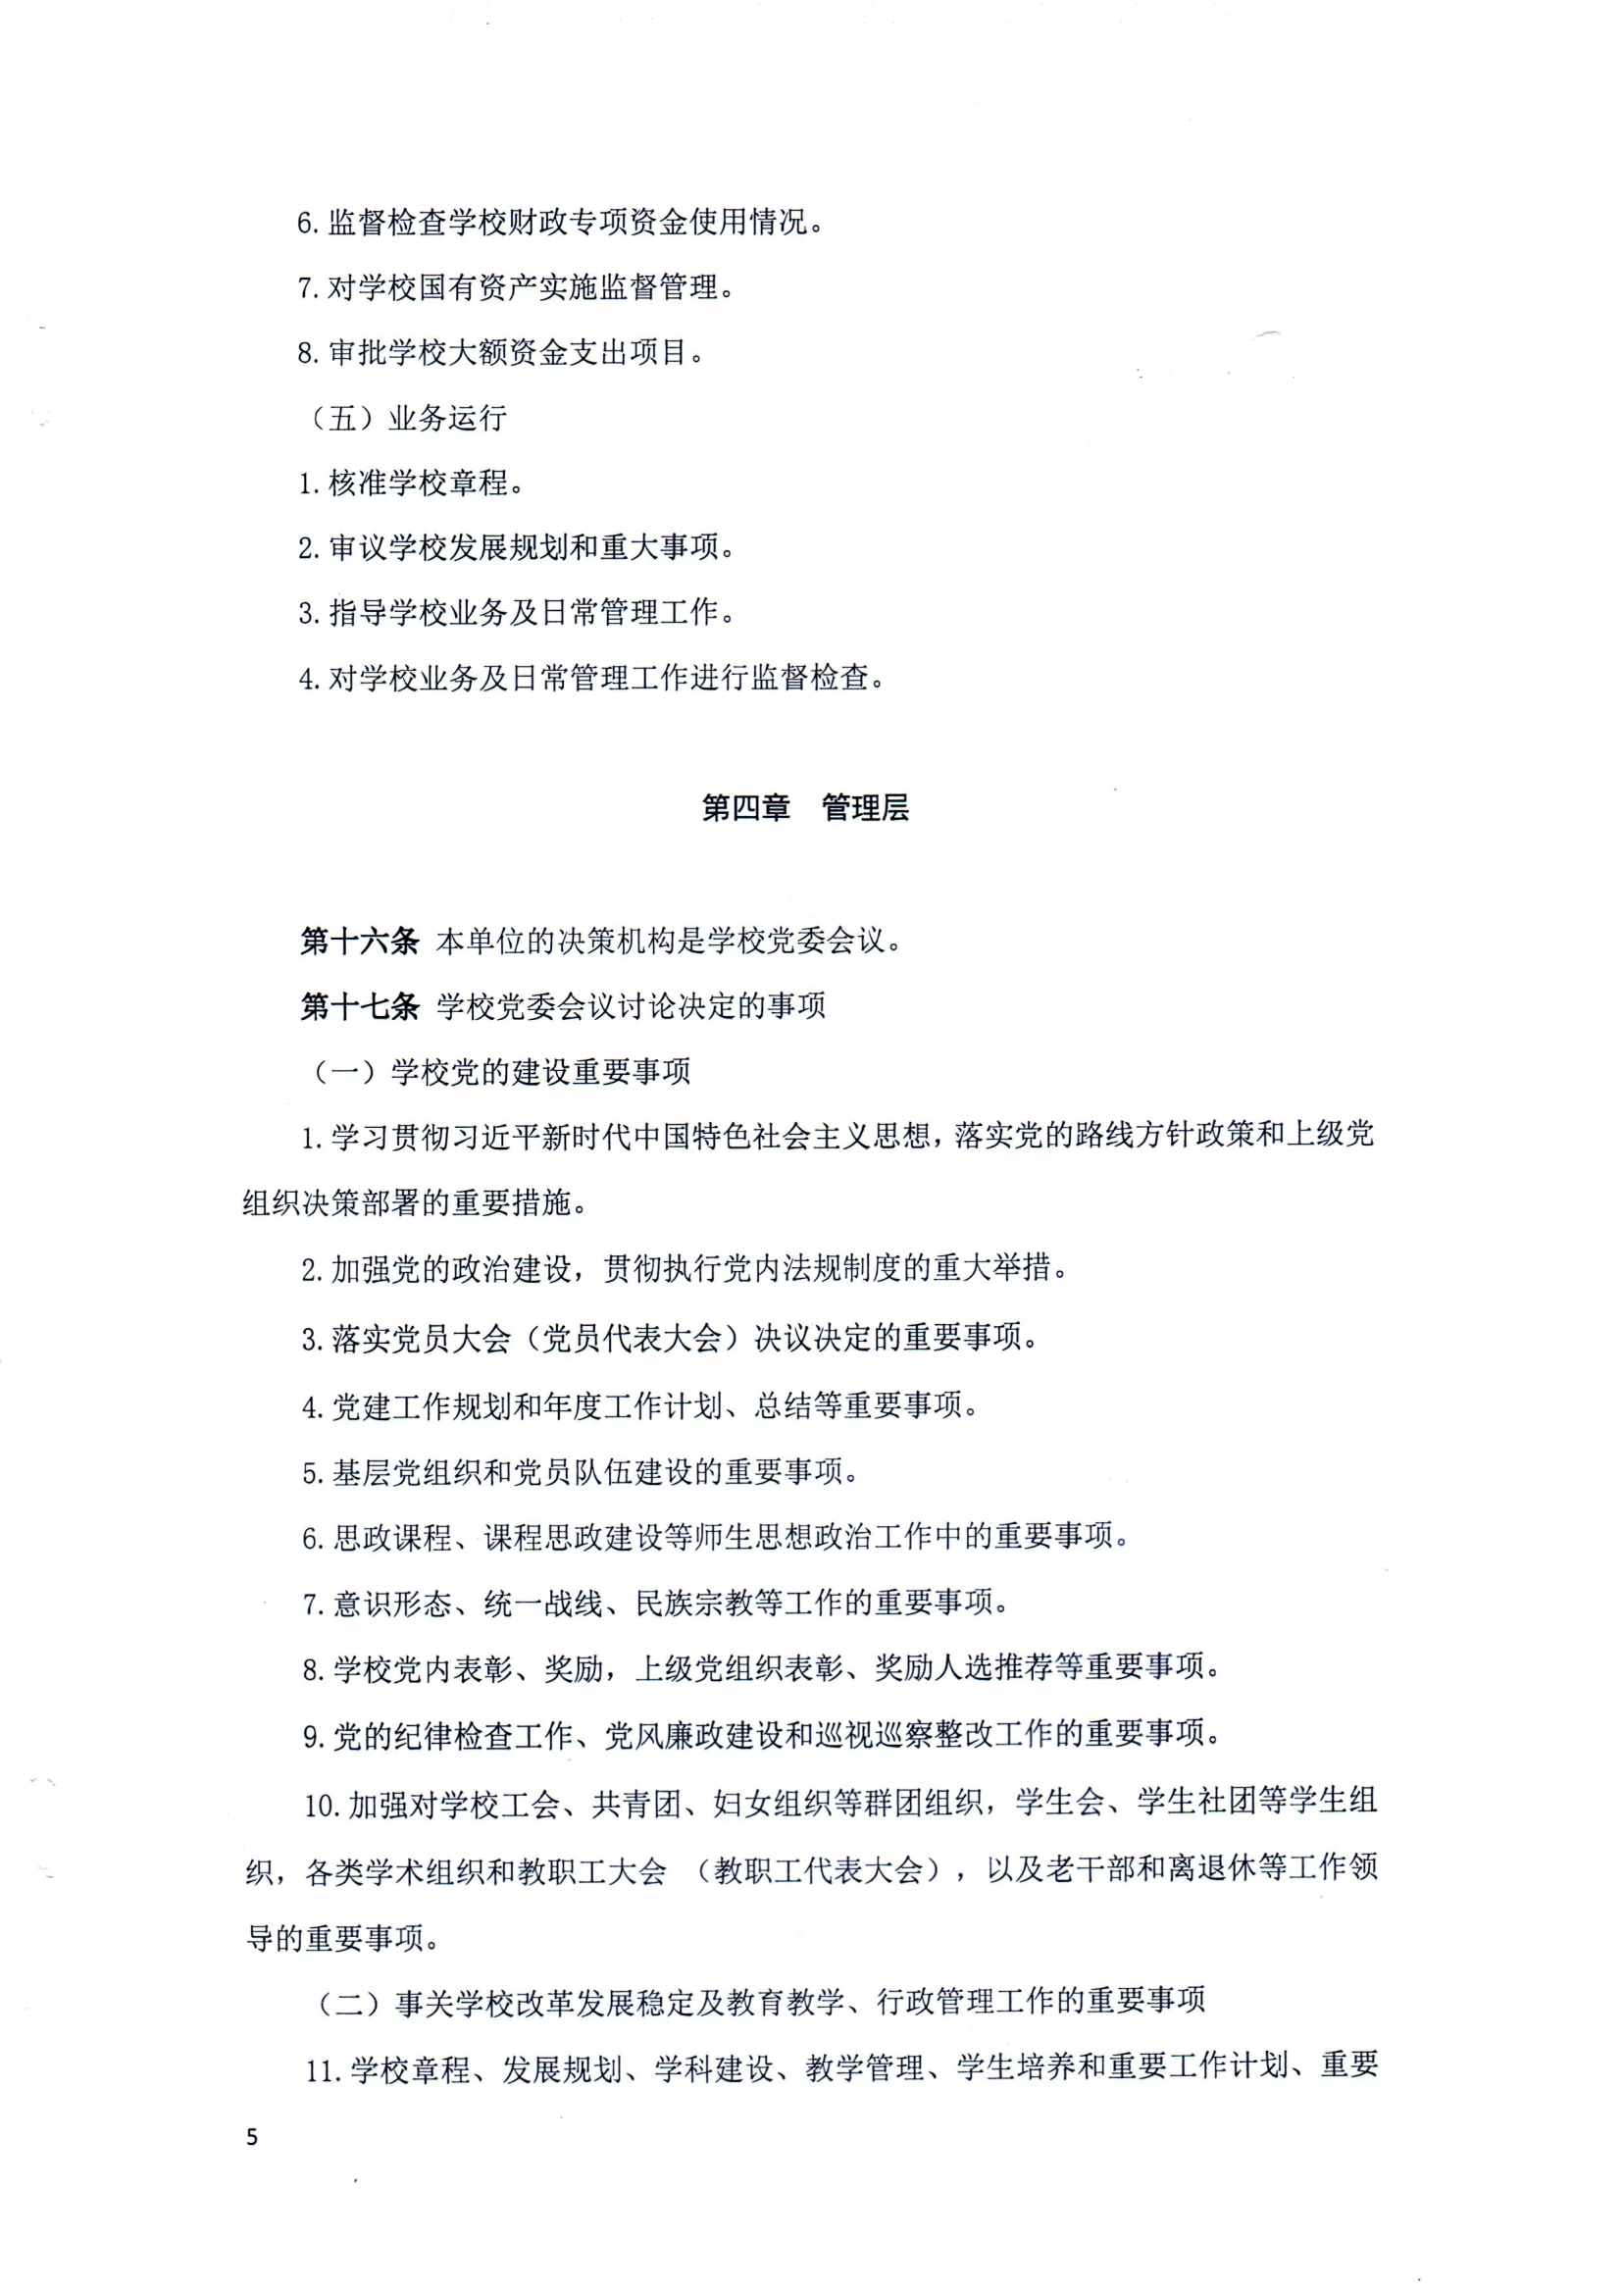 （中国）有限公司官网章程（修正案）_04.png